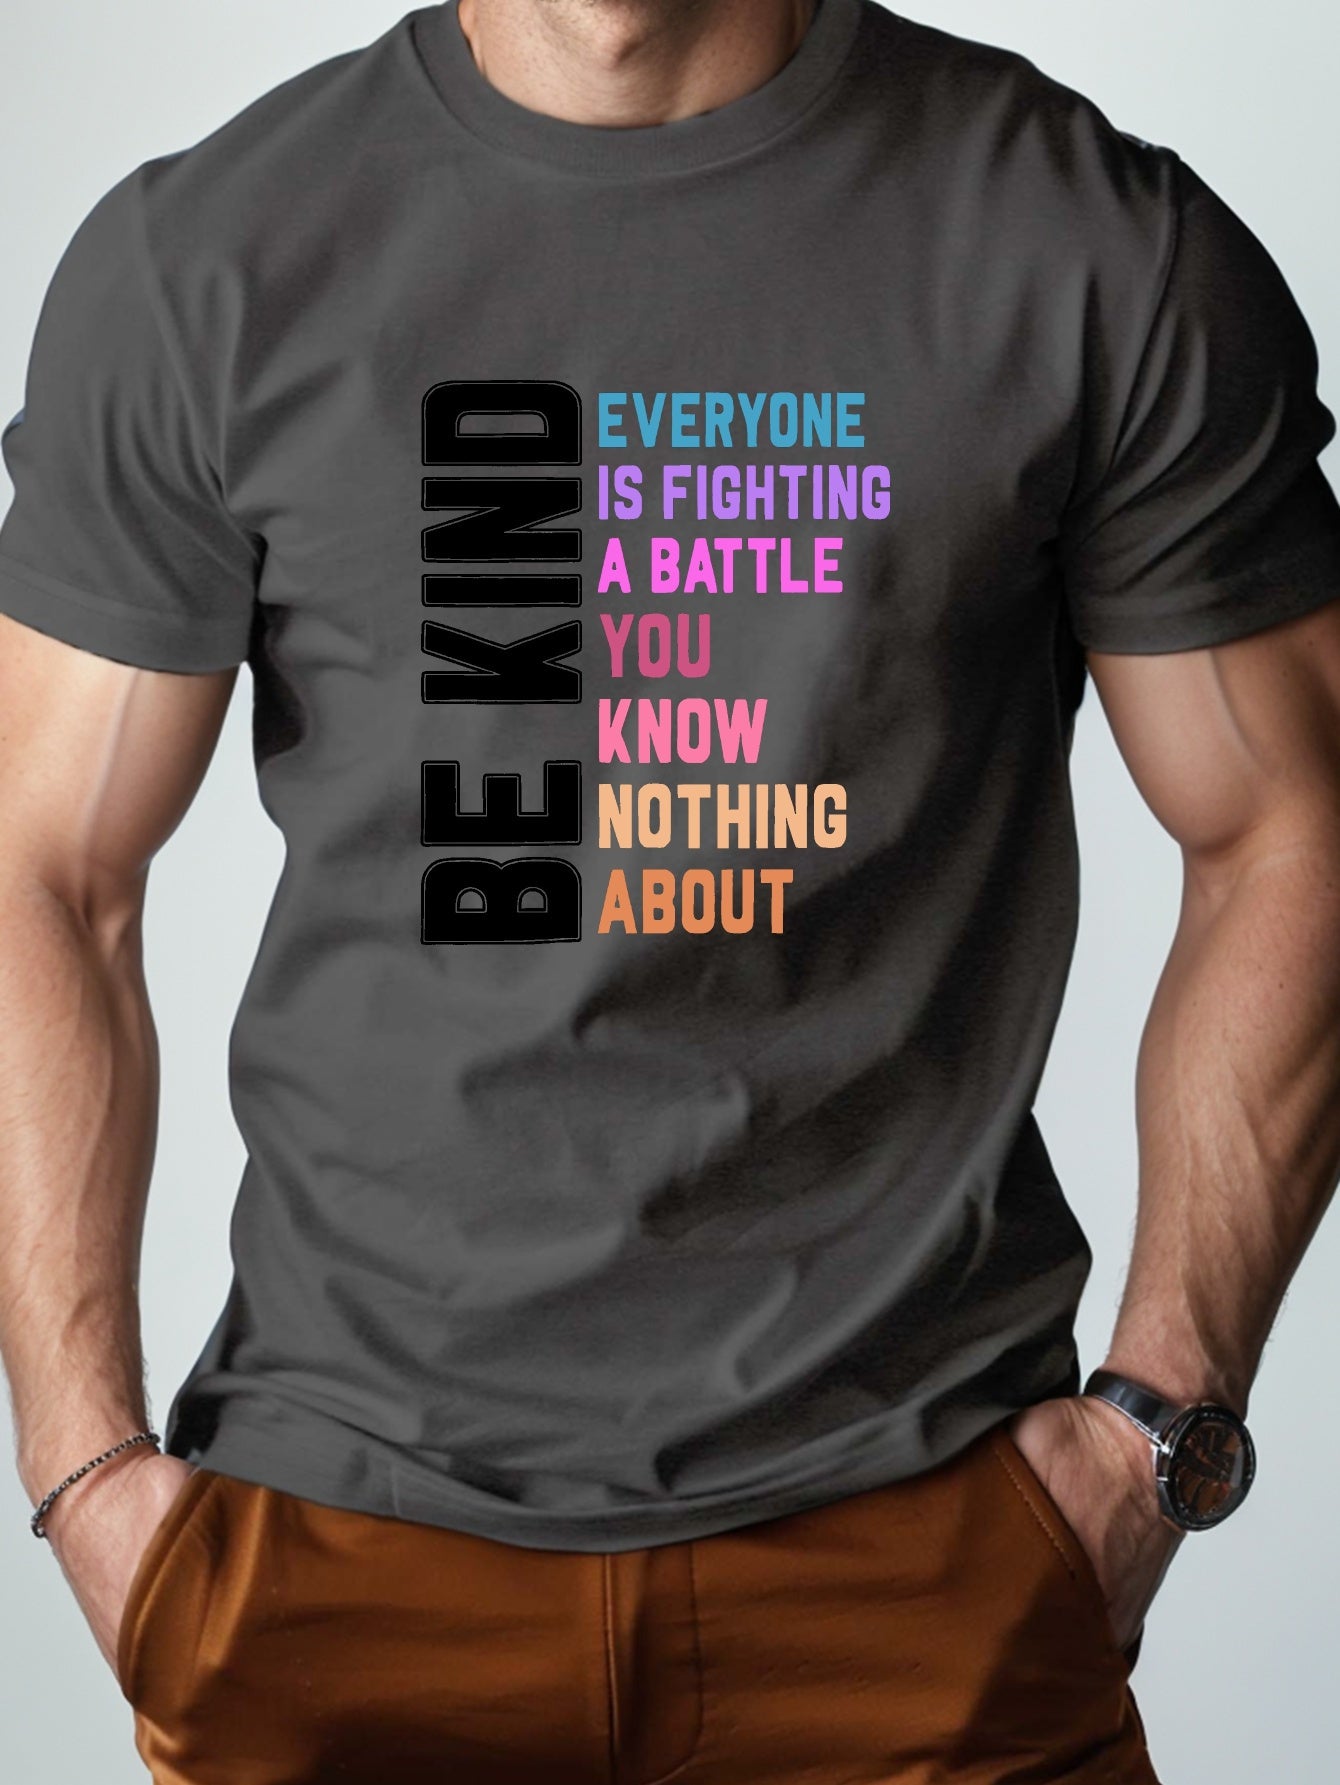 BE KIND Men's Christian T-shirt claimedbygoddesigns